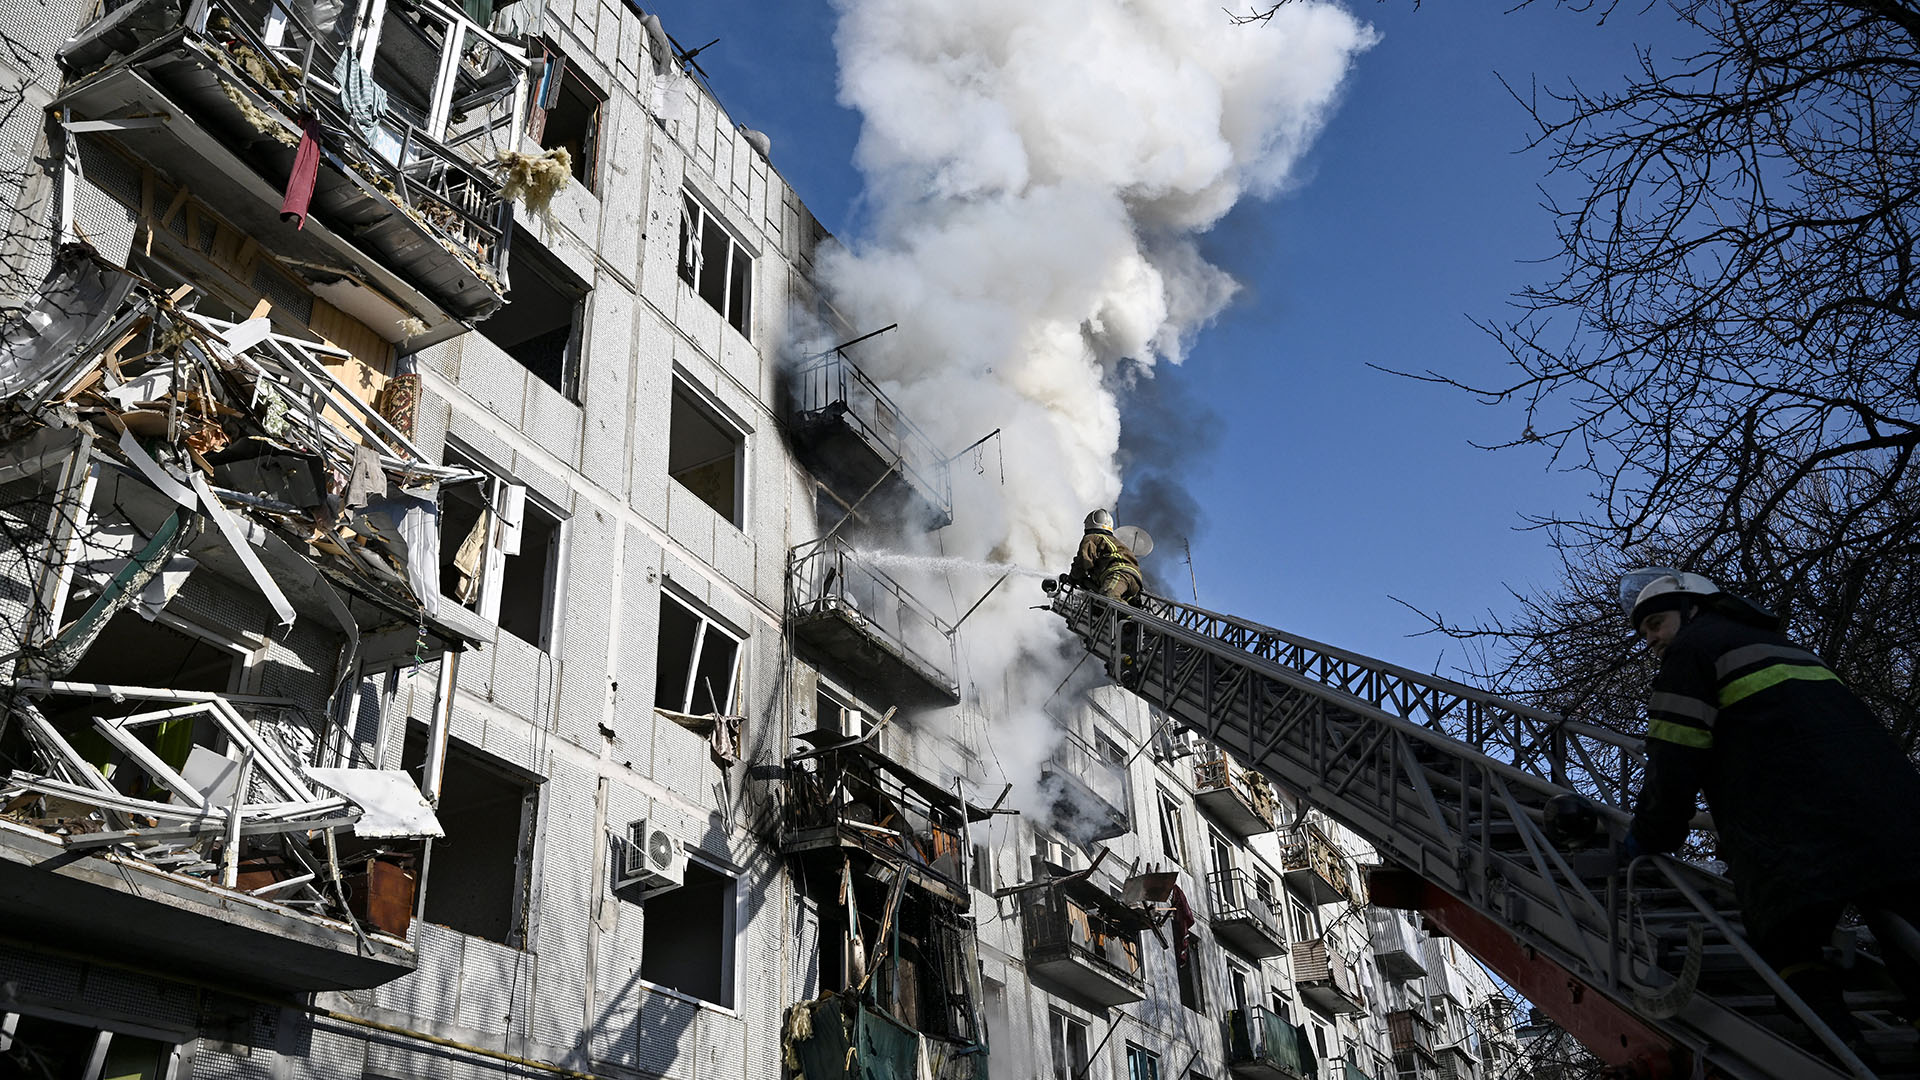 Los bomberos trabajan en un incendio en un edificio después de los bombardeos en la ciudad de Chuguiv, en el este de Ucrania, el 24 de febrero de 2022 (Foto de Aris Messinis / AFP)